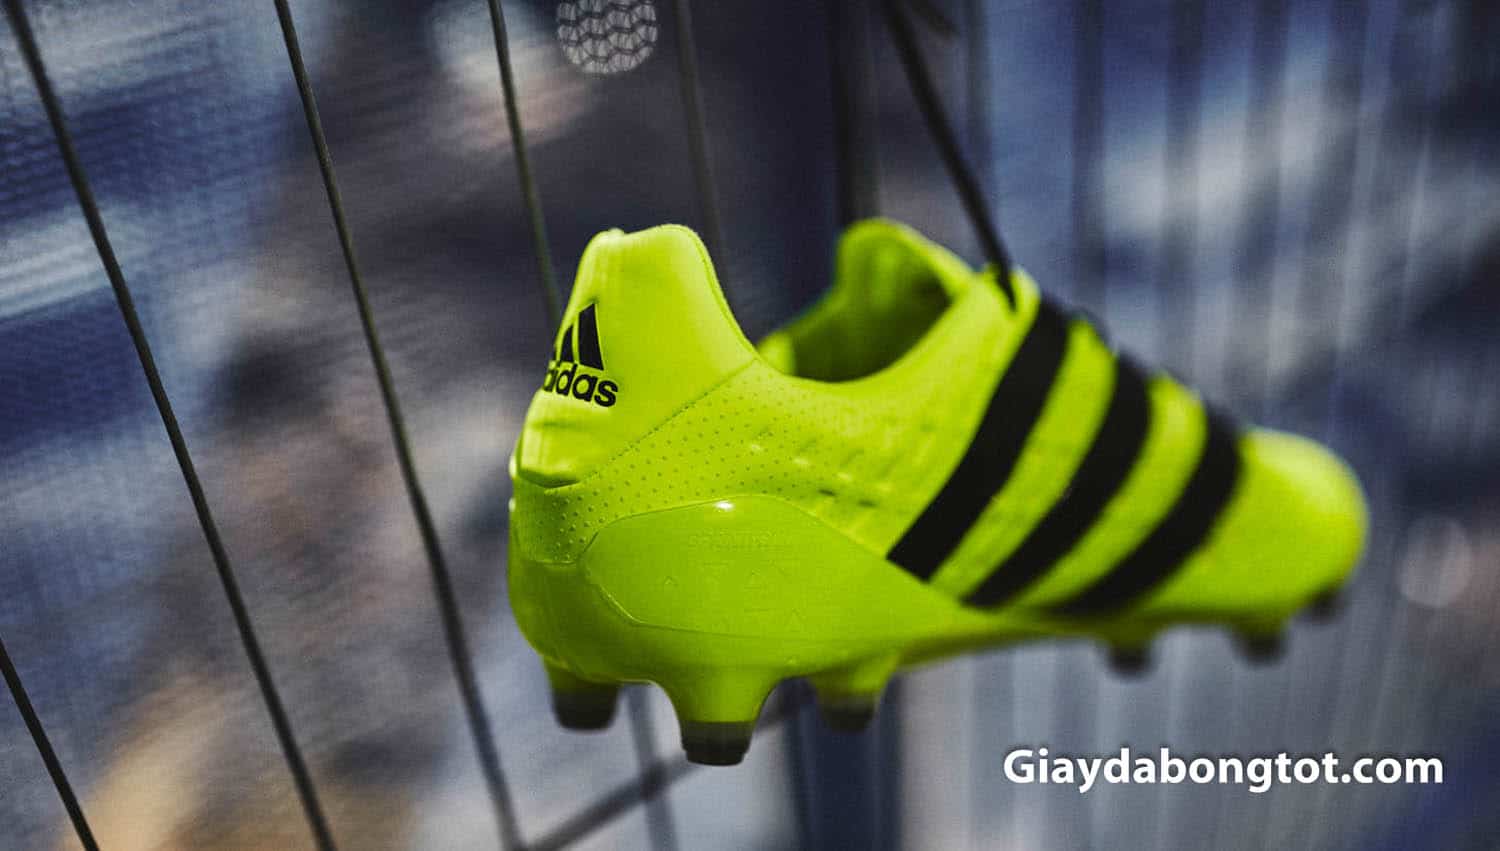 Giày đá banh Adidas ACE 16.1 FG với thiết kế đơn giản được nhiều cầu thủ Việt Nam yêu thích